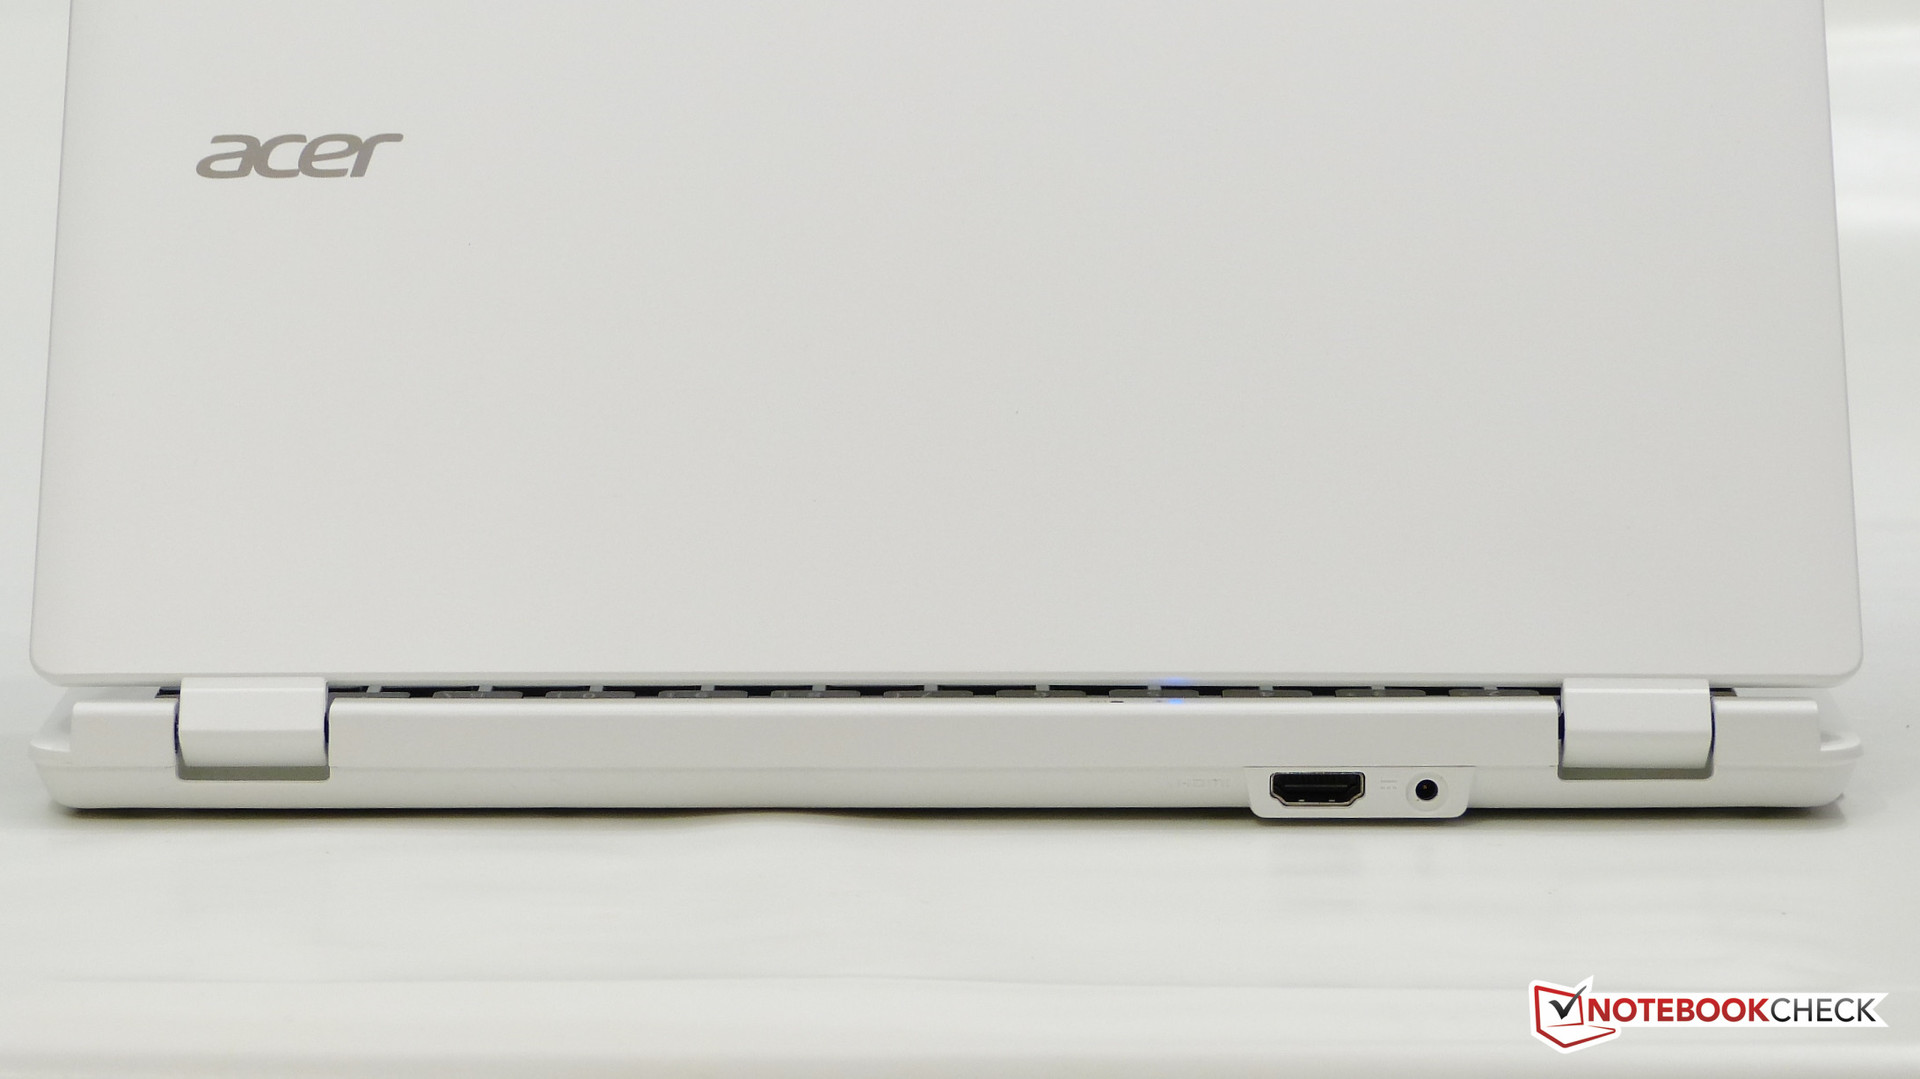 Acer Chromebook 11 CB3-111 Review - NotebookCheck.net Reviews